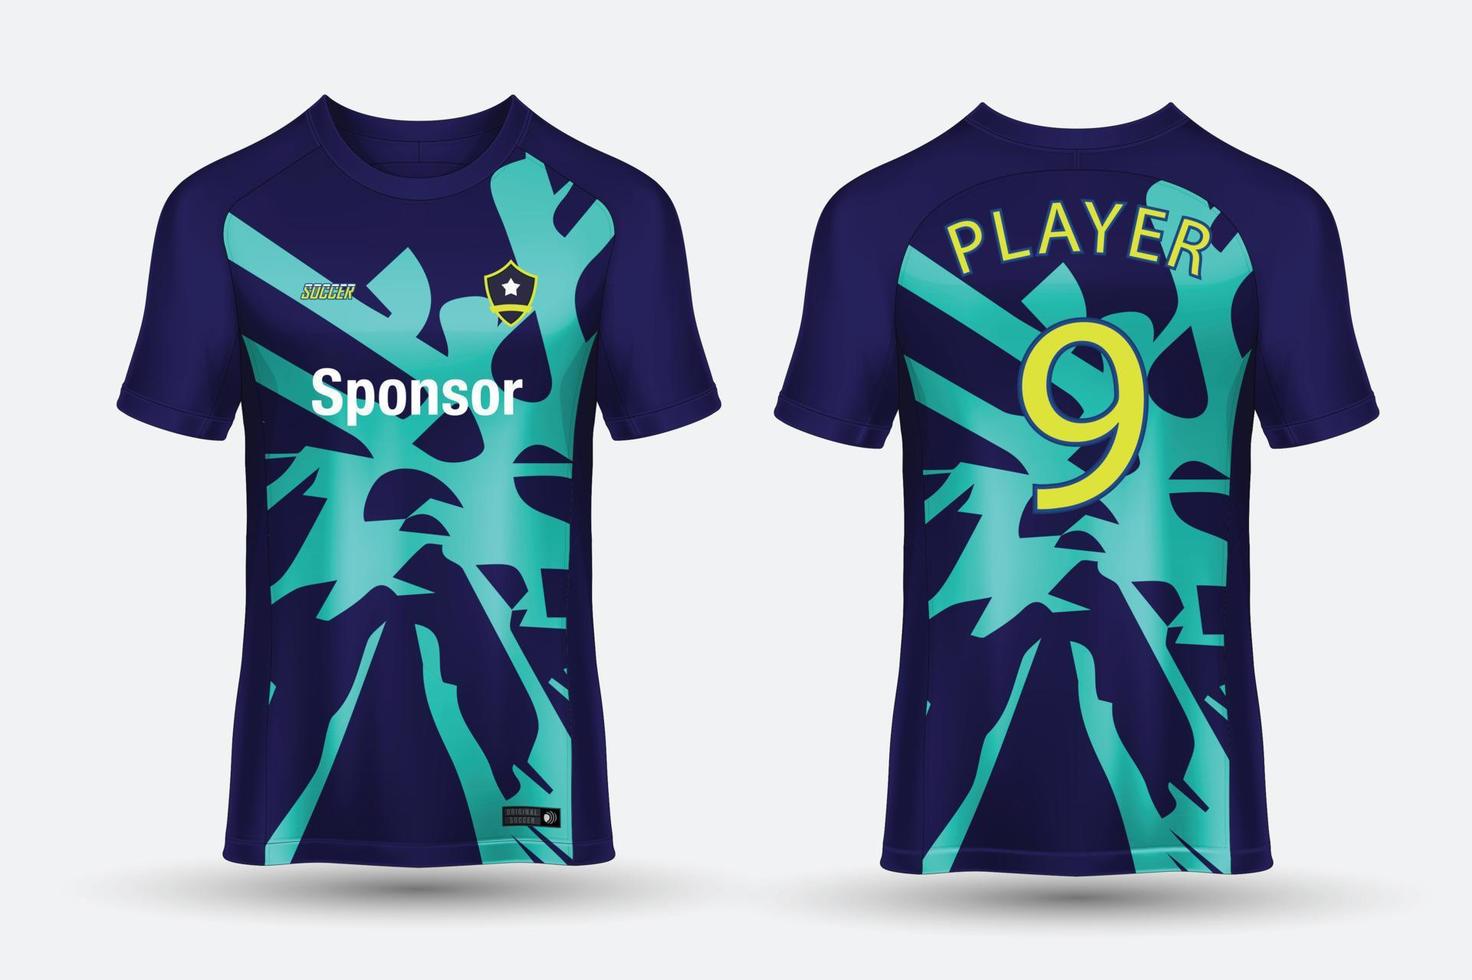 vector soccer jersey template sport t shirt design